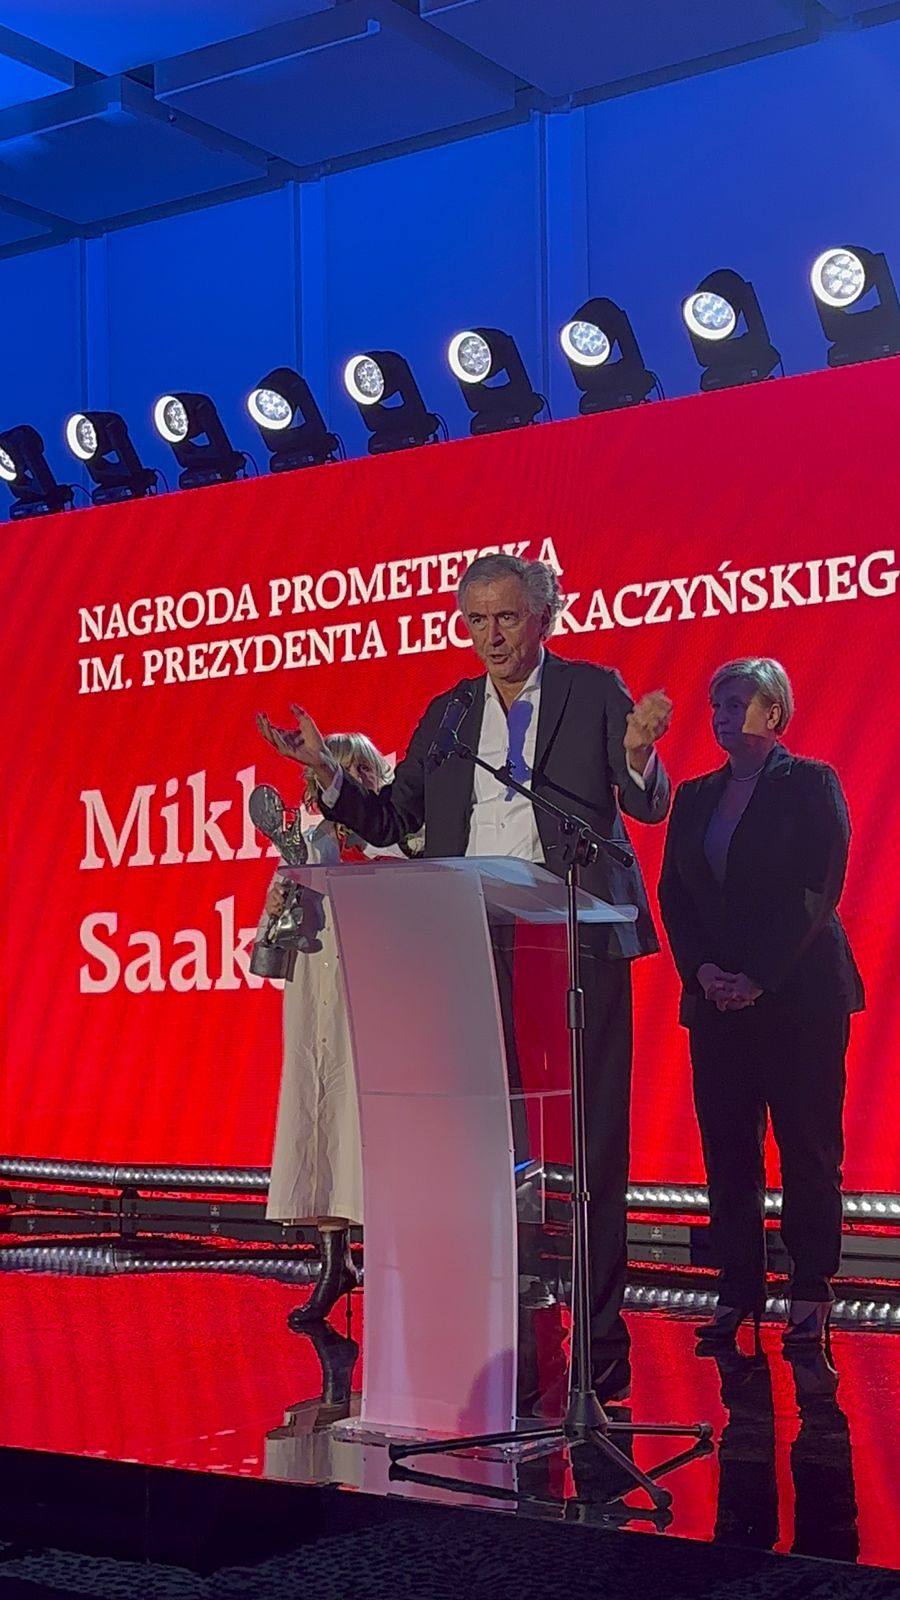 Le discours de BHL à l'occasion de la remise du prix « Lech Kaczyński Prometheus Awards » attribué à l'ancien Président et dissident géorgien Mikheïl Saakachvili.